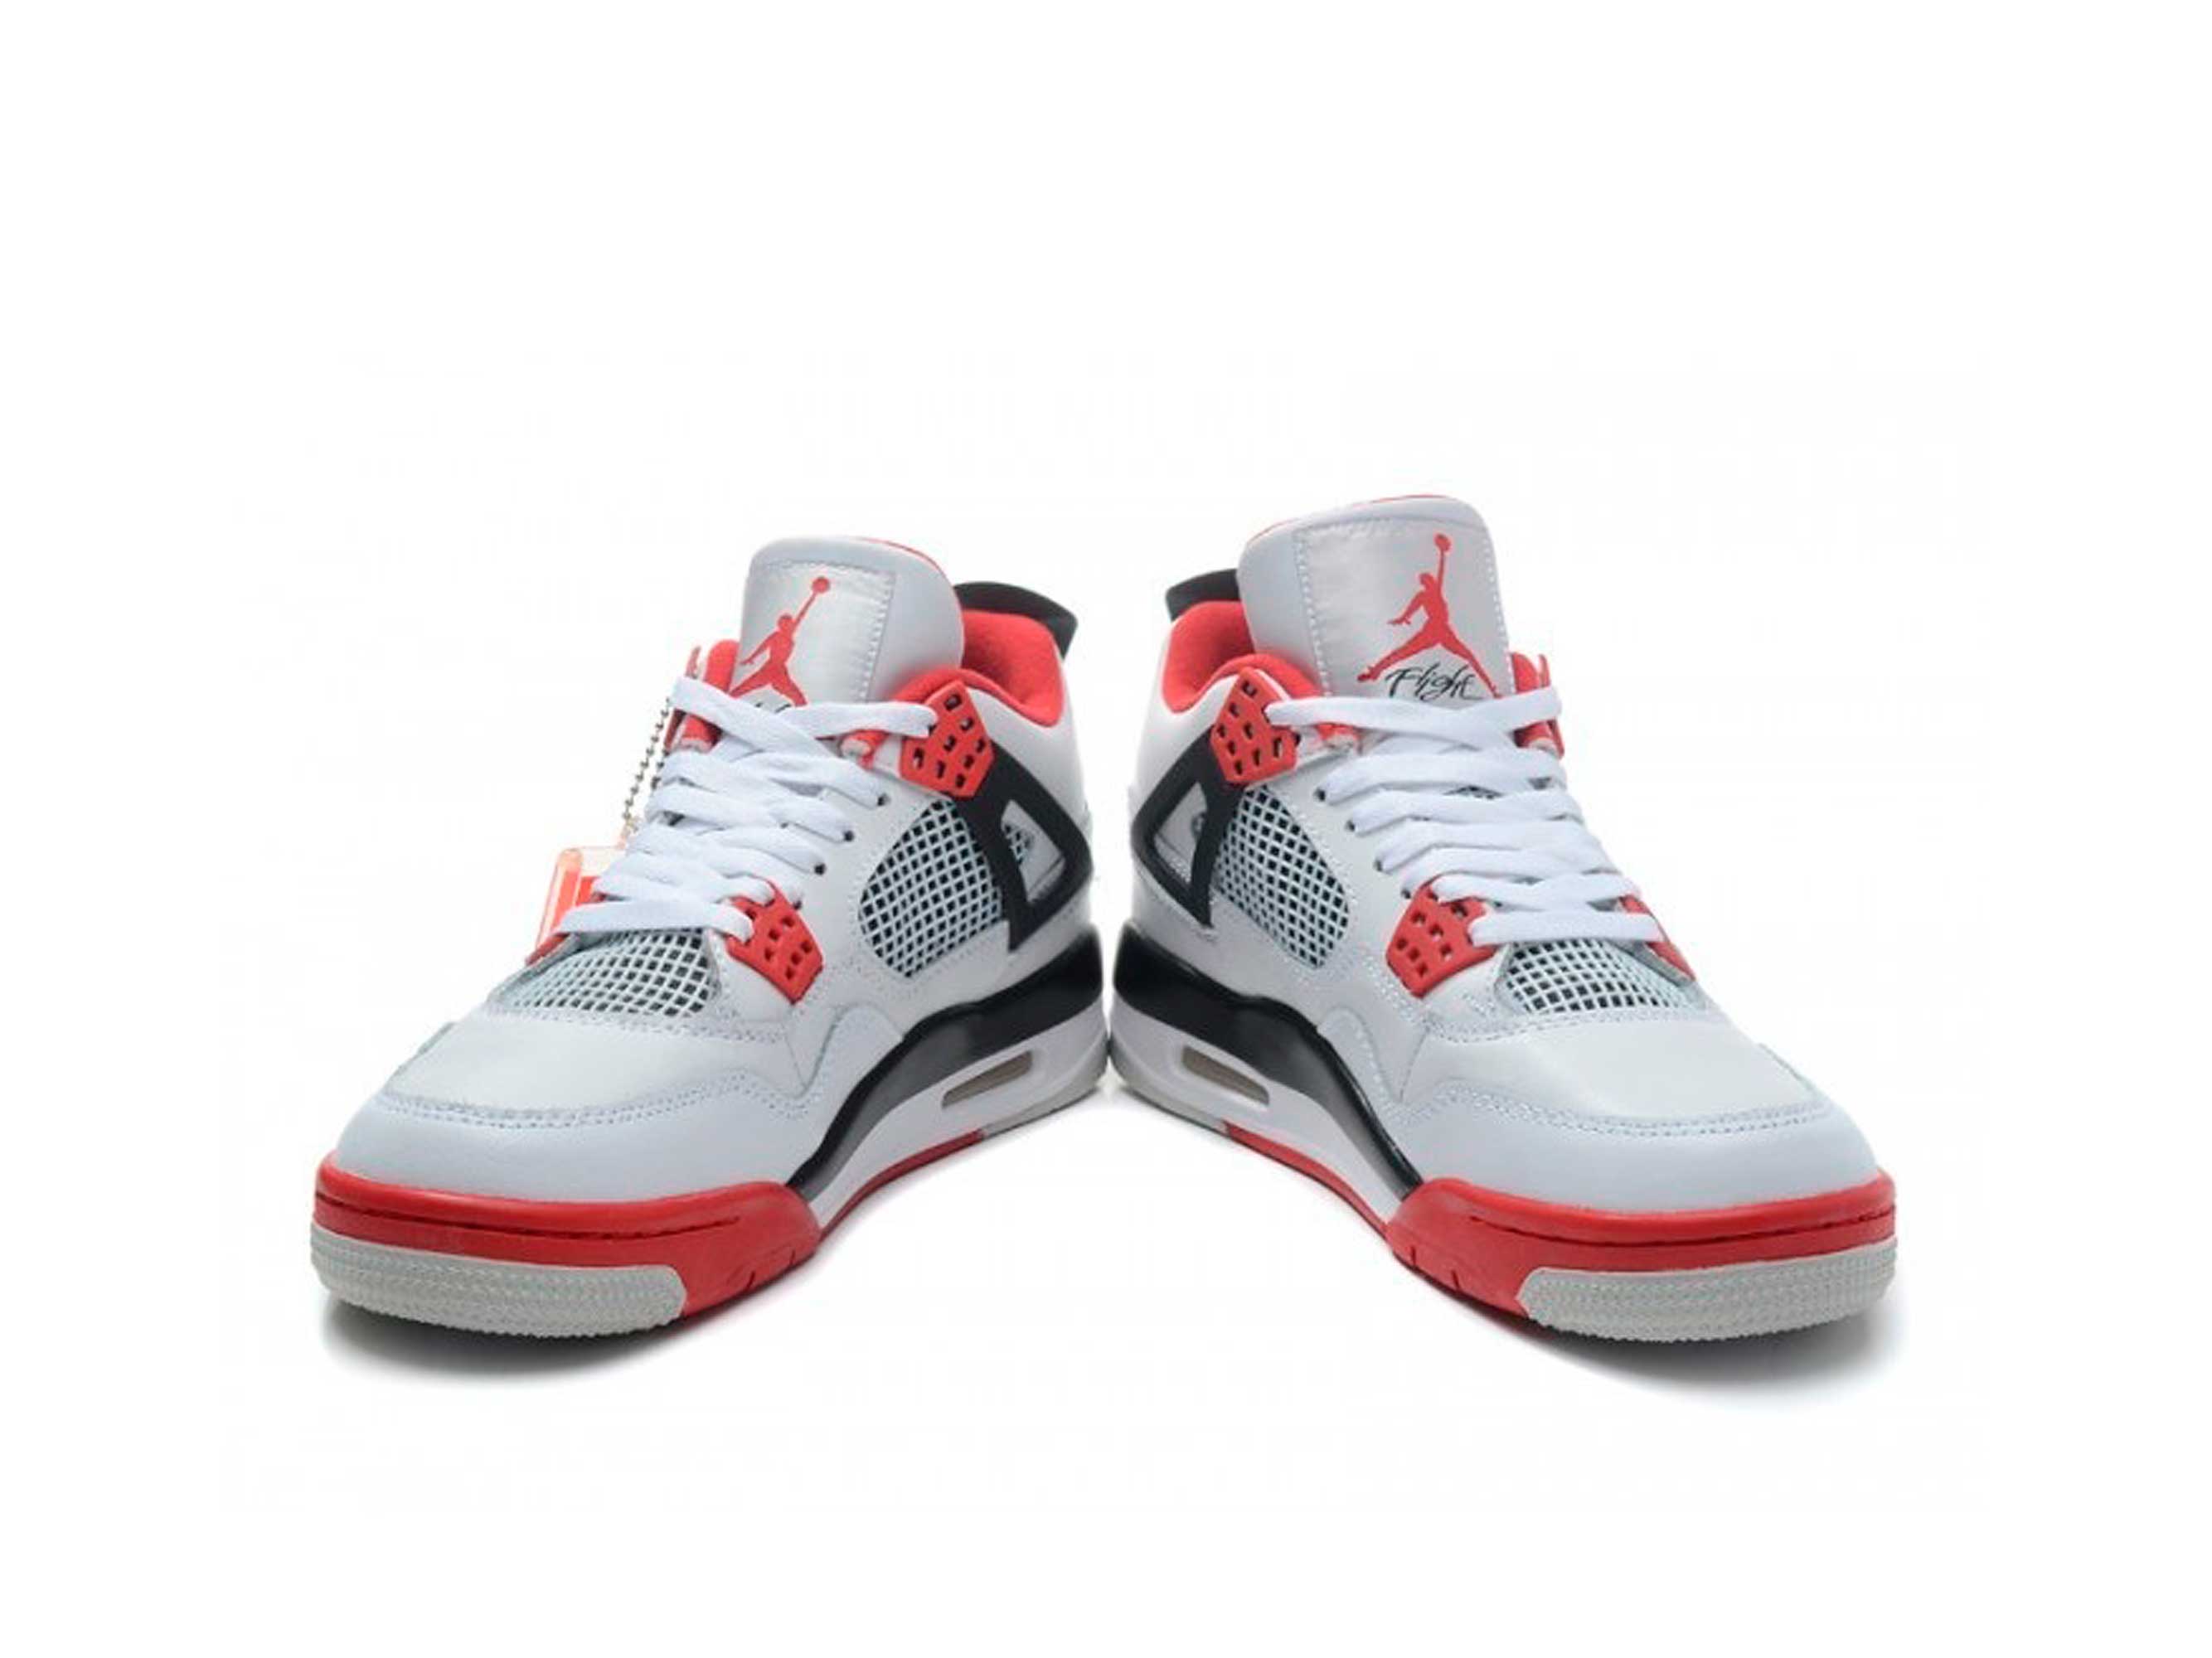 Nike jordan 4 red. Nike Air Jordan 4 White Red. Nike Air Jordan 4 Retro Fire Red. Nike Air Jordan 4 Retro White Red. Nike Air Jordan 4 Fire Red.